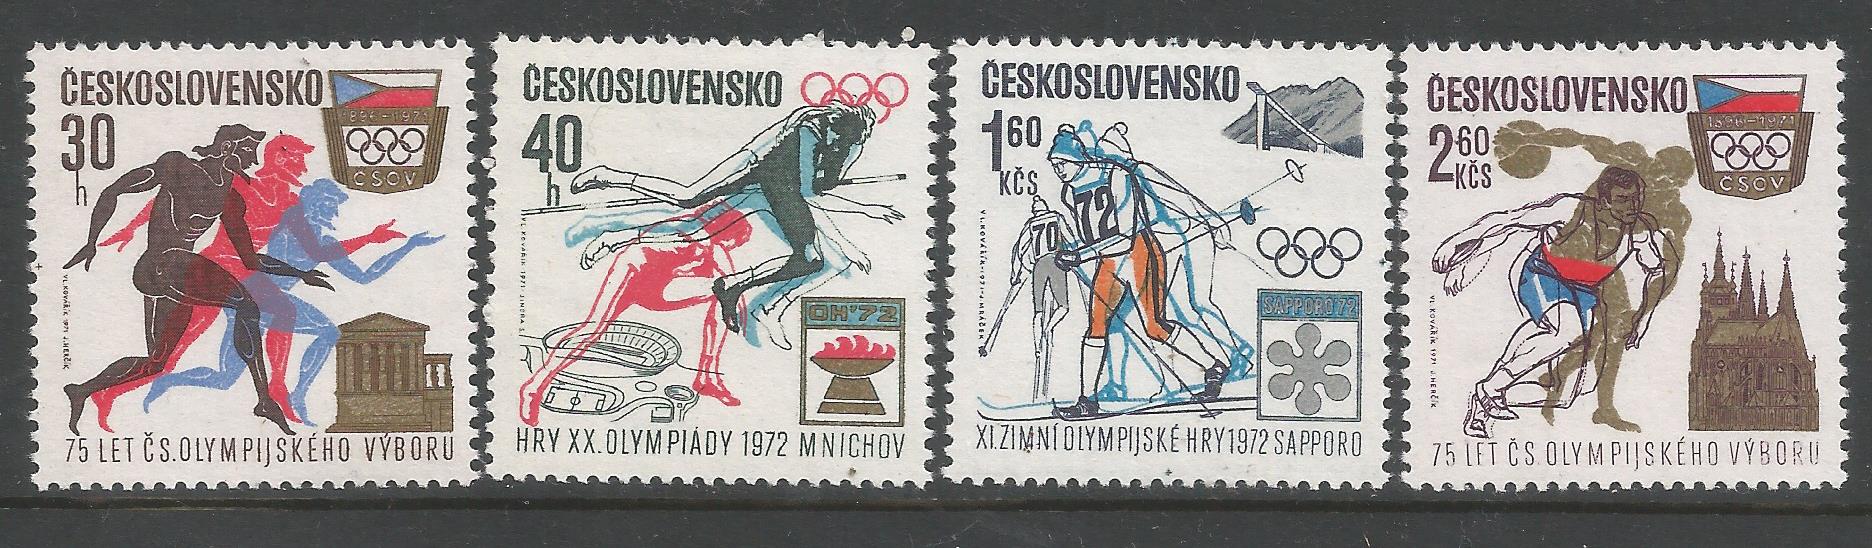 51944 - CECOSLOVACCHIA - 1971 - Comitato Olimpico Cecoslovacco - 4 val. cpl nuovi - Michel : 2045/2048 - Yvert : 1889/1892 - [CEC027]